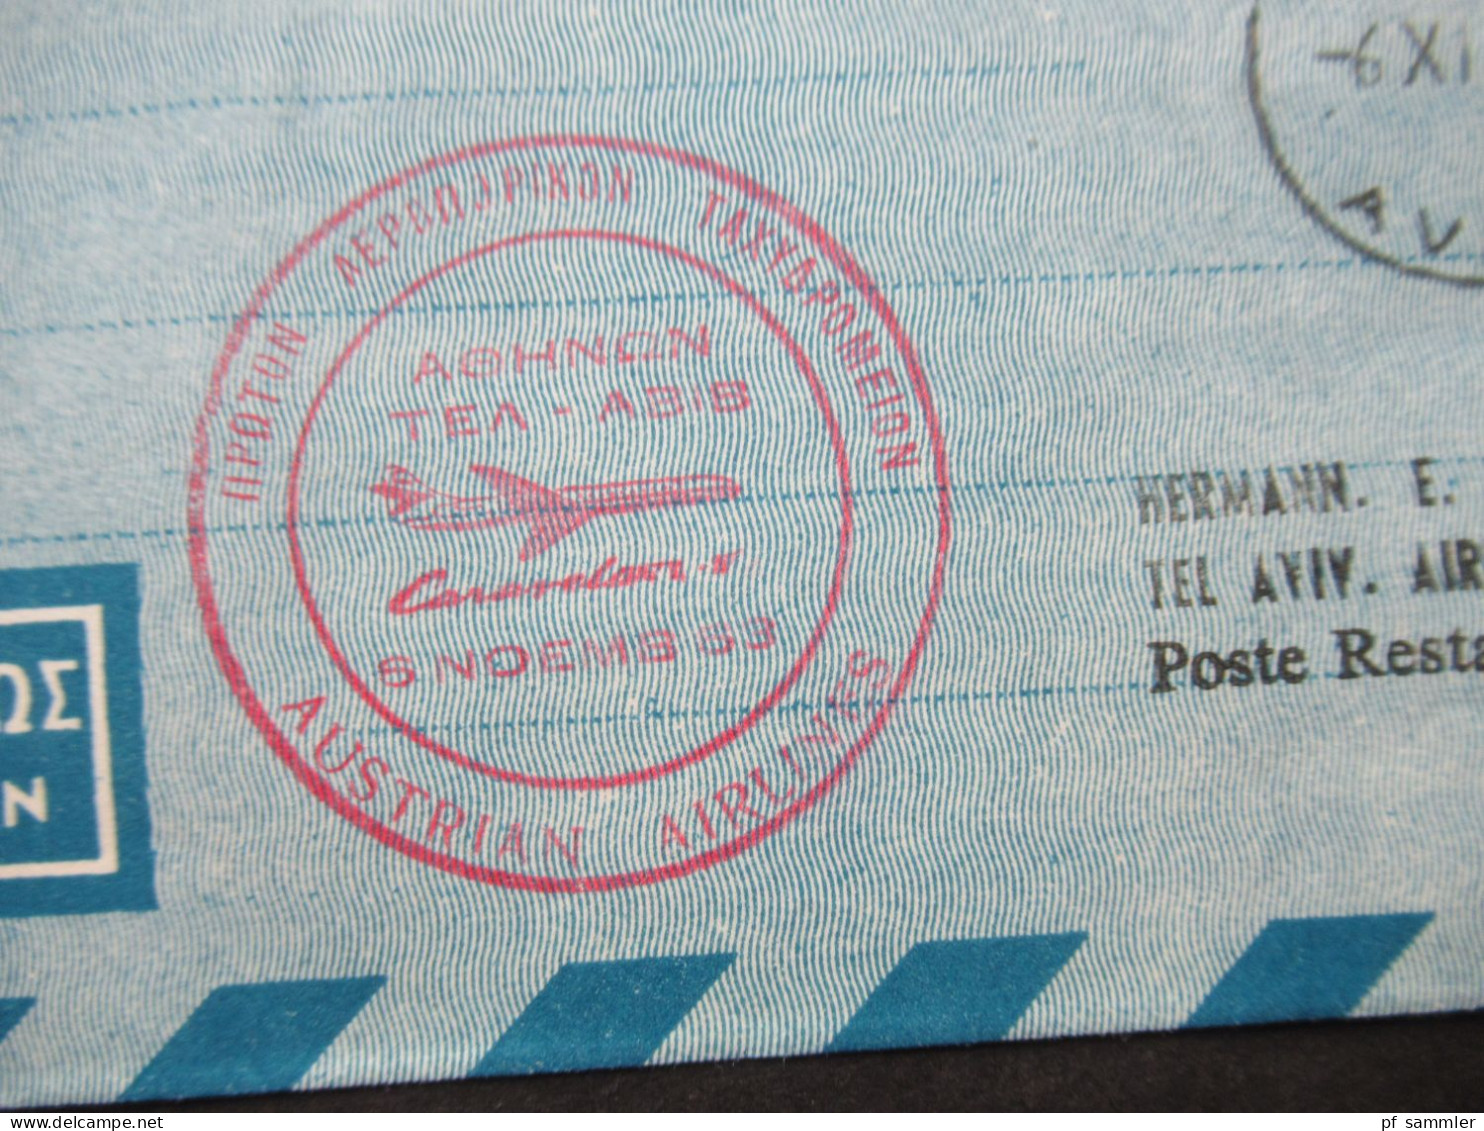 Griechenland 1963 Postes Helleniques Par Avion / Luftpost / Condor Austrian Airlines - Tel Aviv Israel Poste Restante - Storia Postale